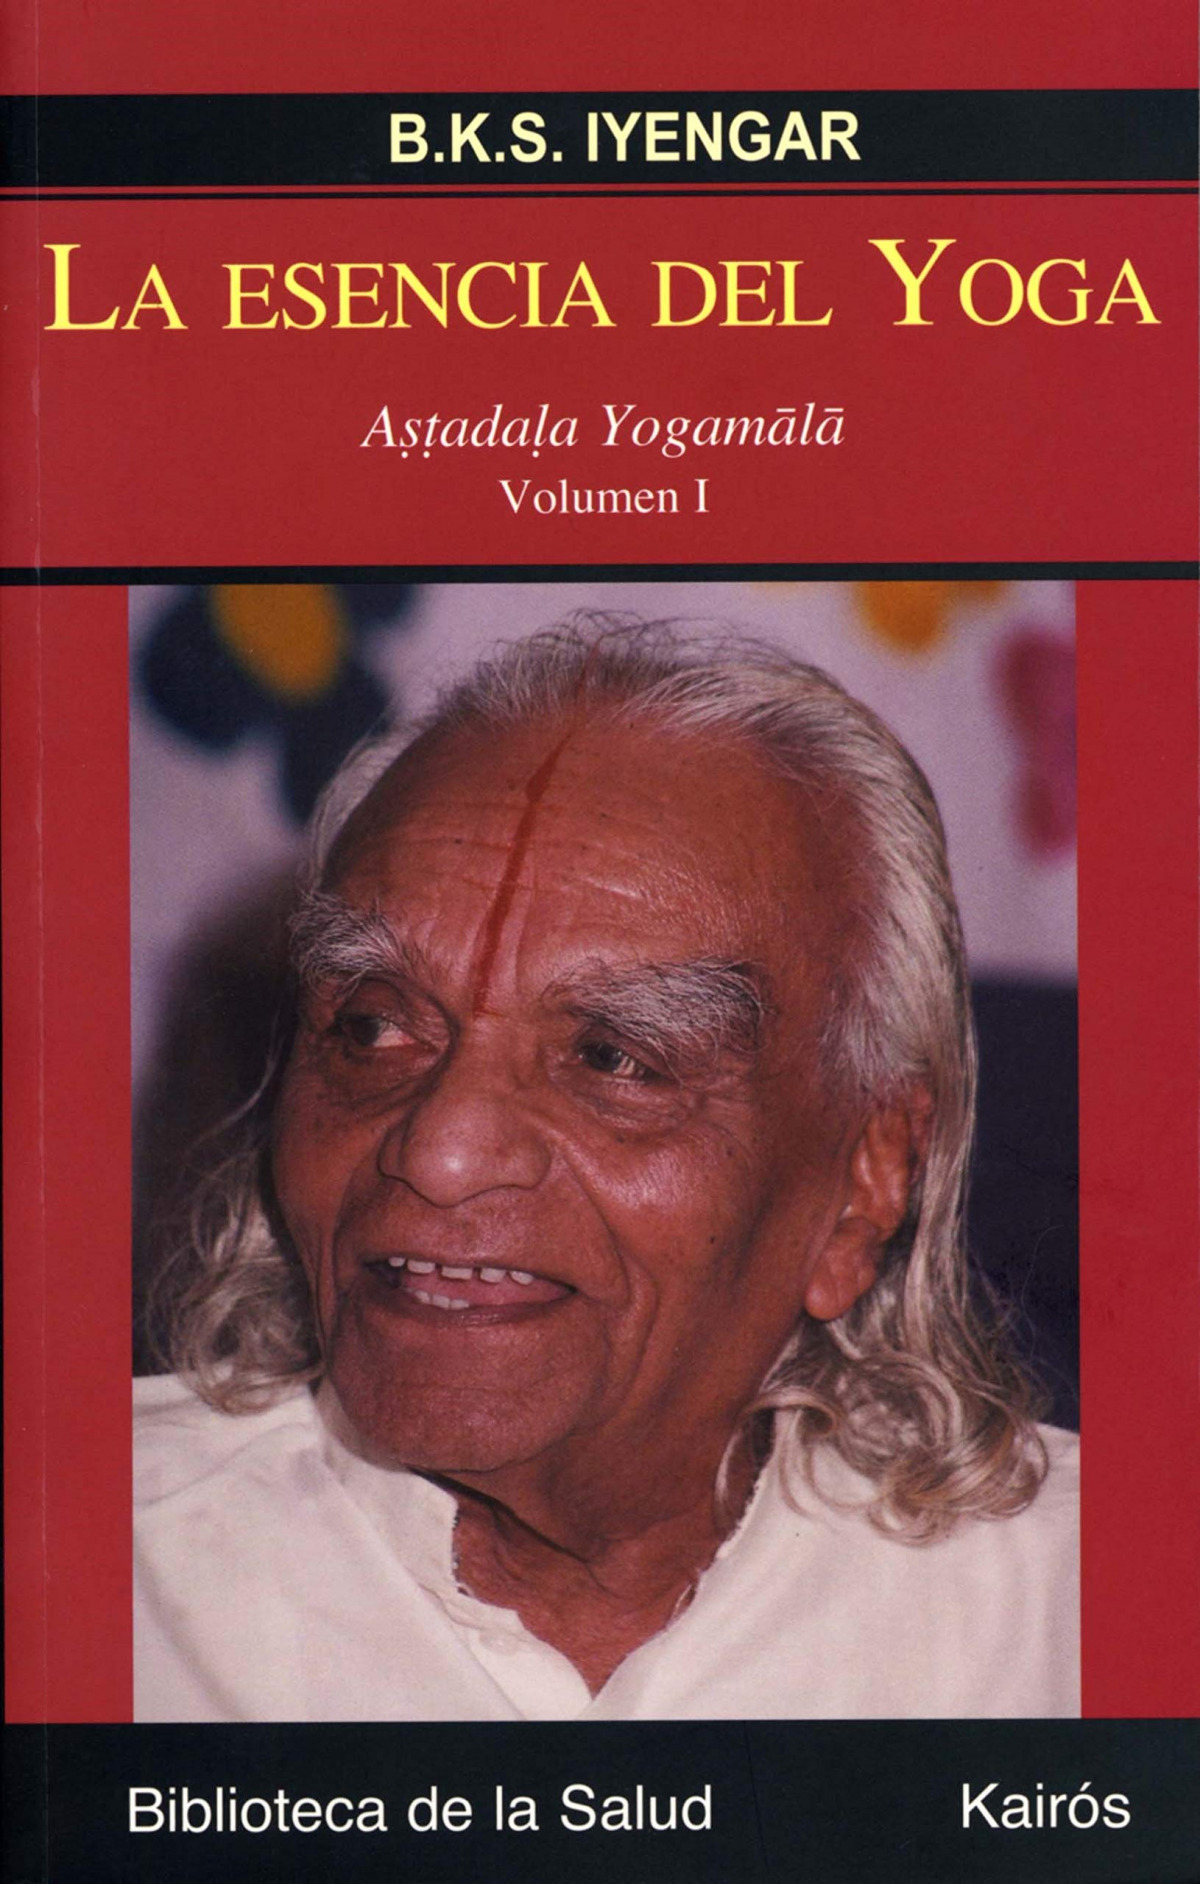 La esencia del Yoga I Astadala Yogamala. Volumen I - Iyengar, B.K.S.